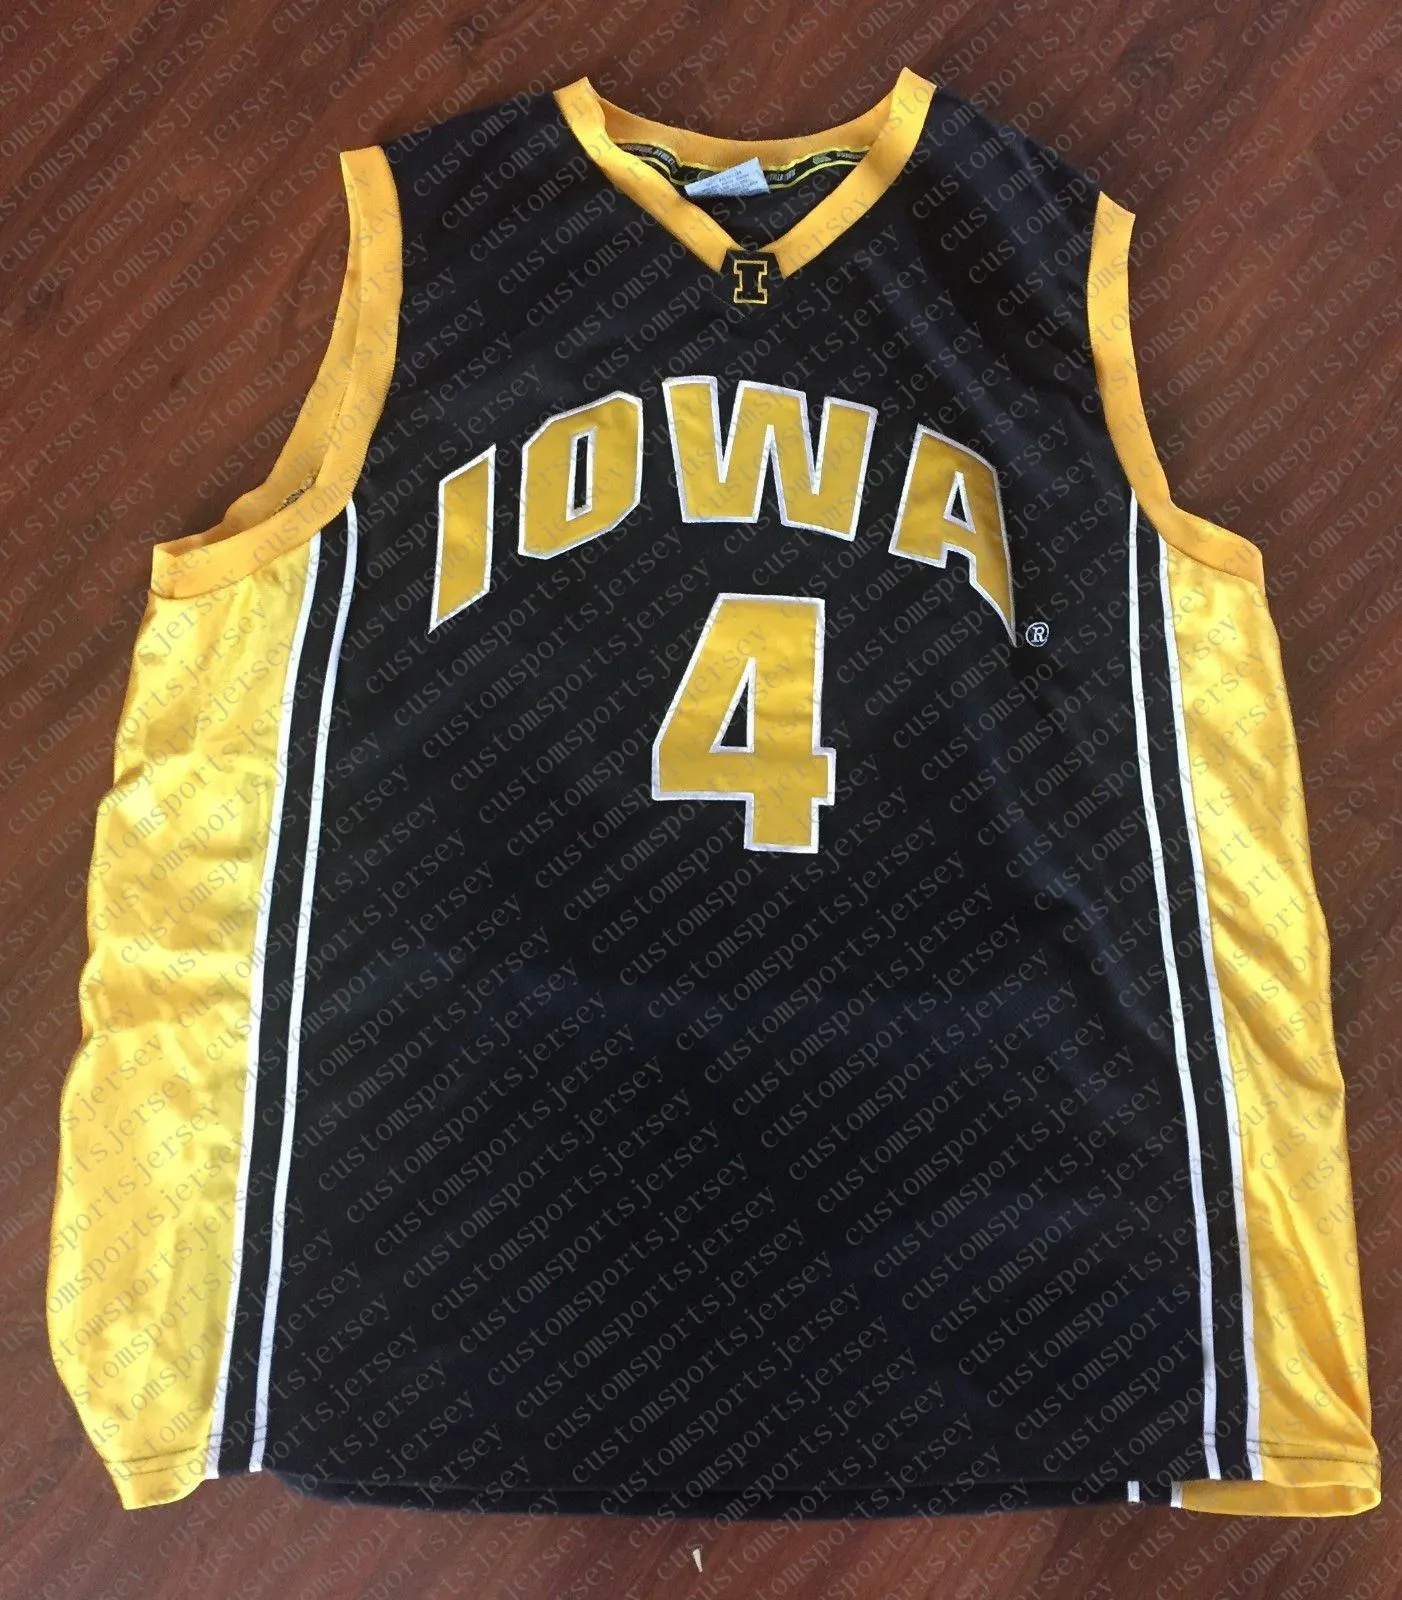 personnalisé # 4 Iowa Hawkeyes Colosseum Basketball Jersey Noir Cousu Personnalisez n'importe quel nom de numéro HOMMES FEMMES JEUNESSE XS-5XL